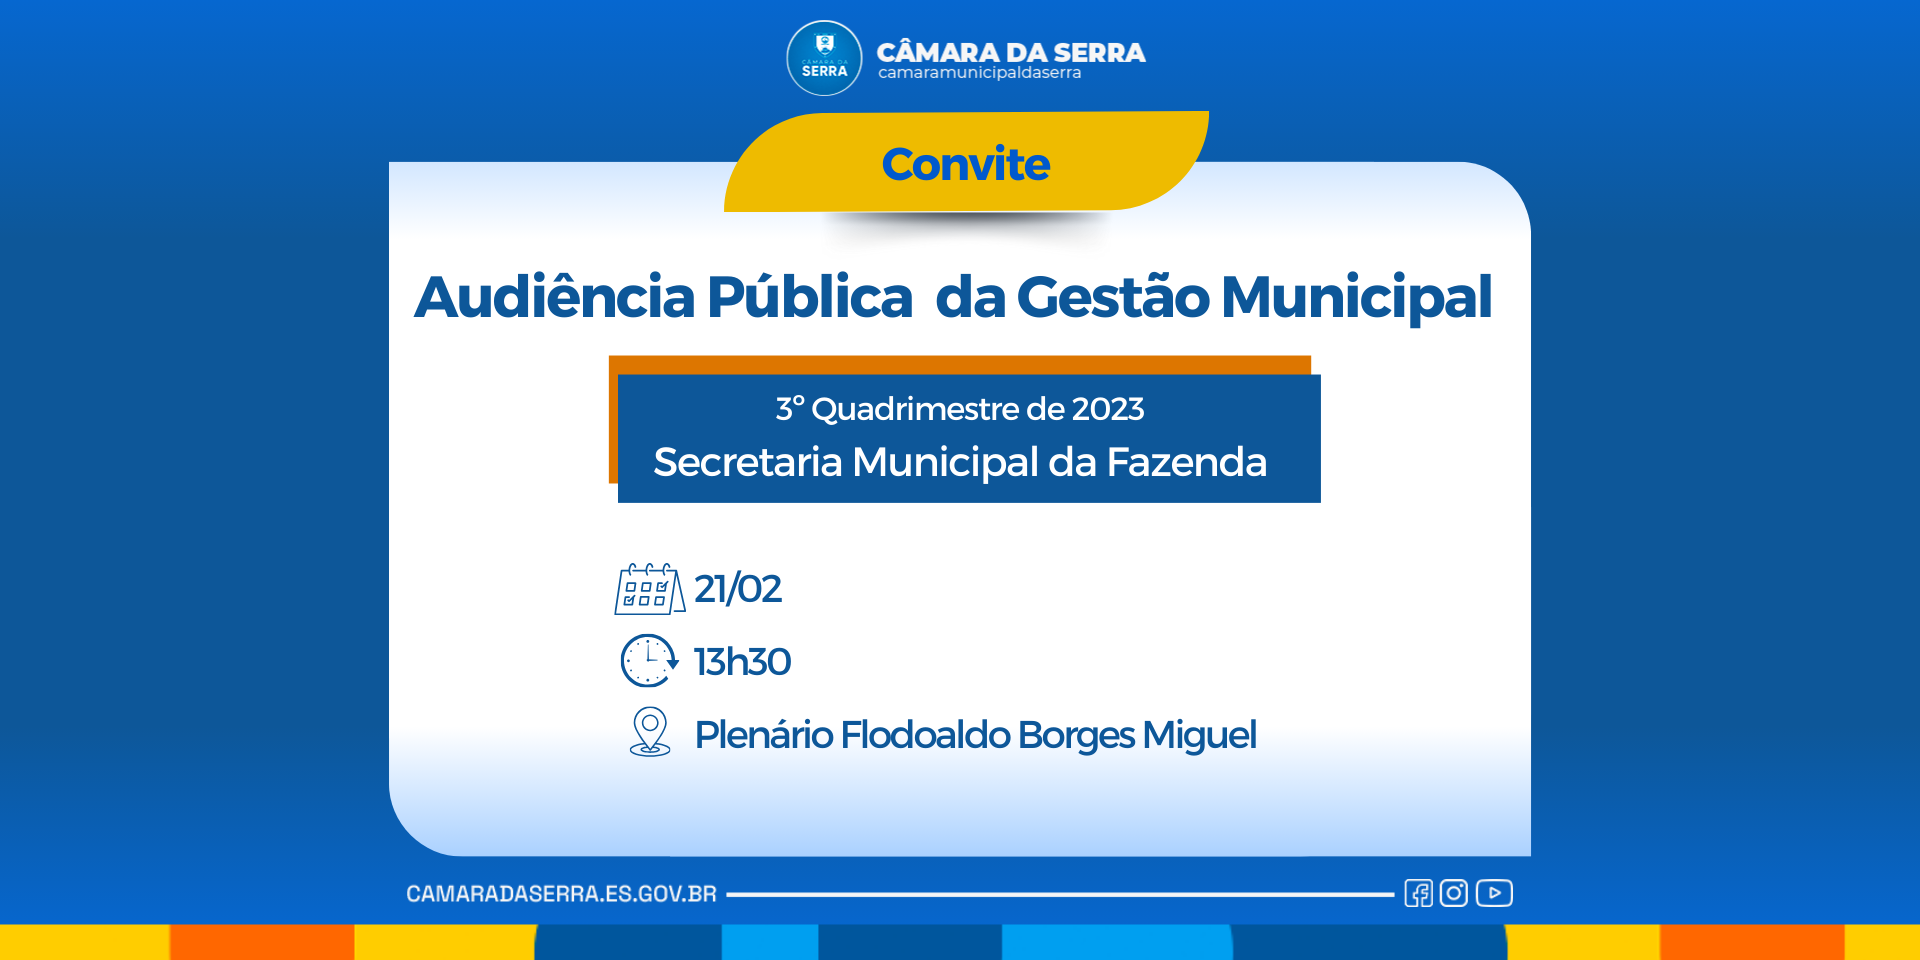 Convite à população serrana: Audiência Pública da Gestão Municipal 3º Quadrimestre de 2023